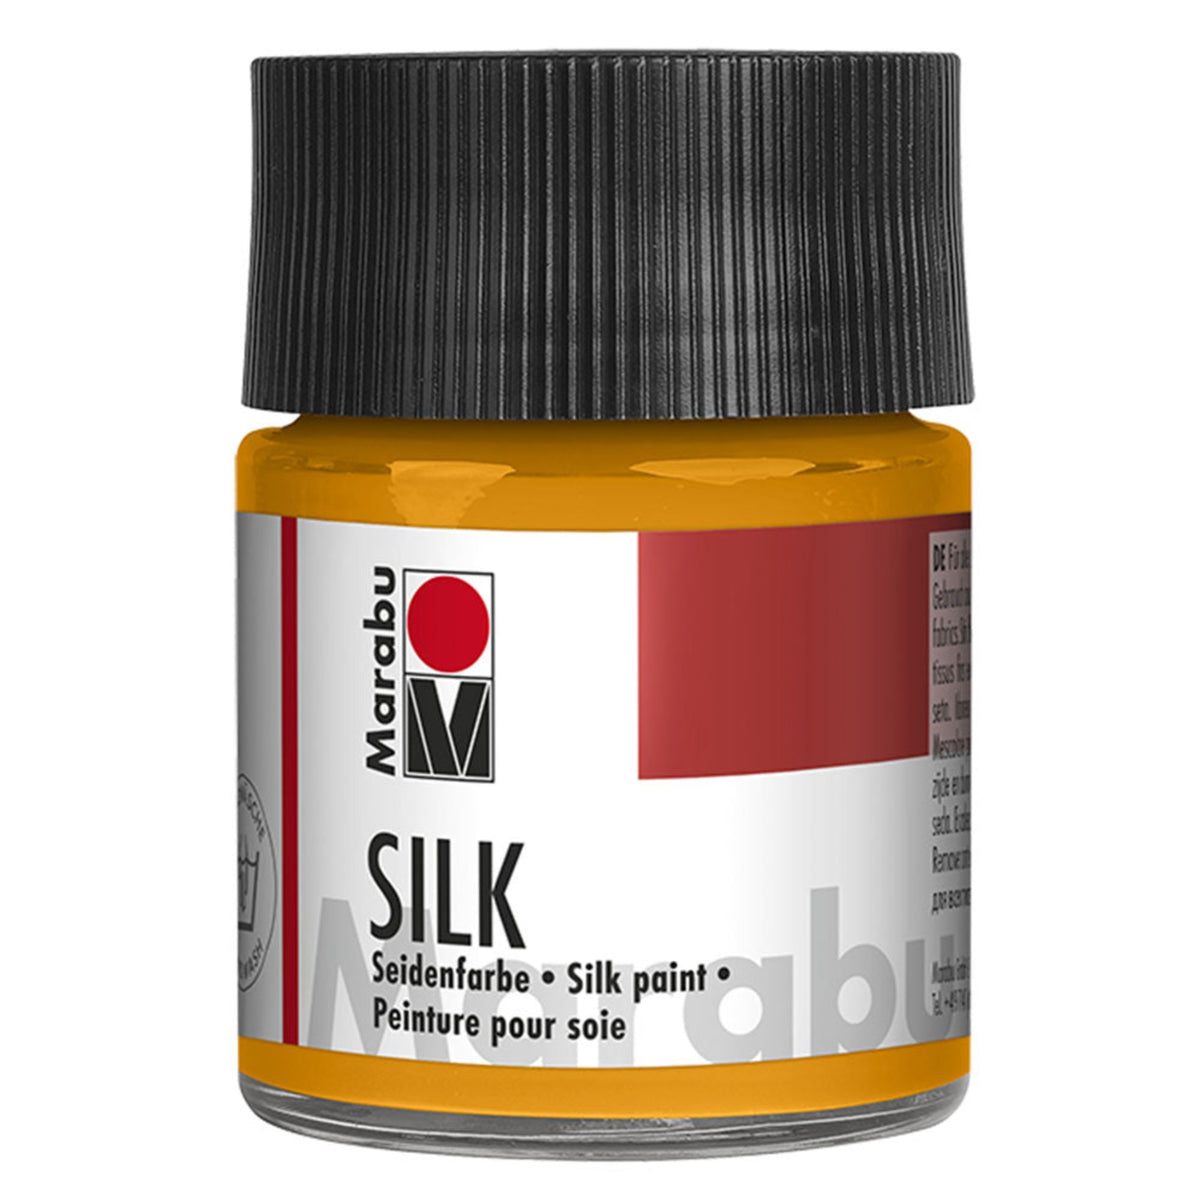 Marabu Silk Paints - 50ml Jars